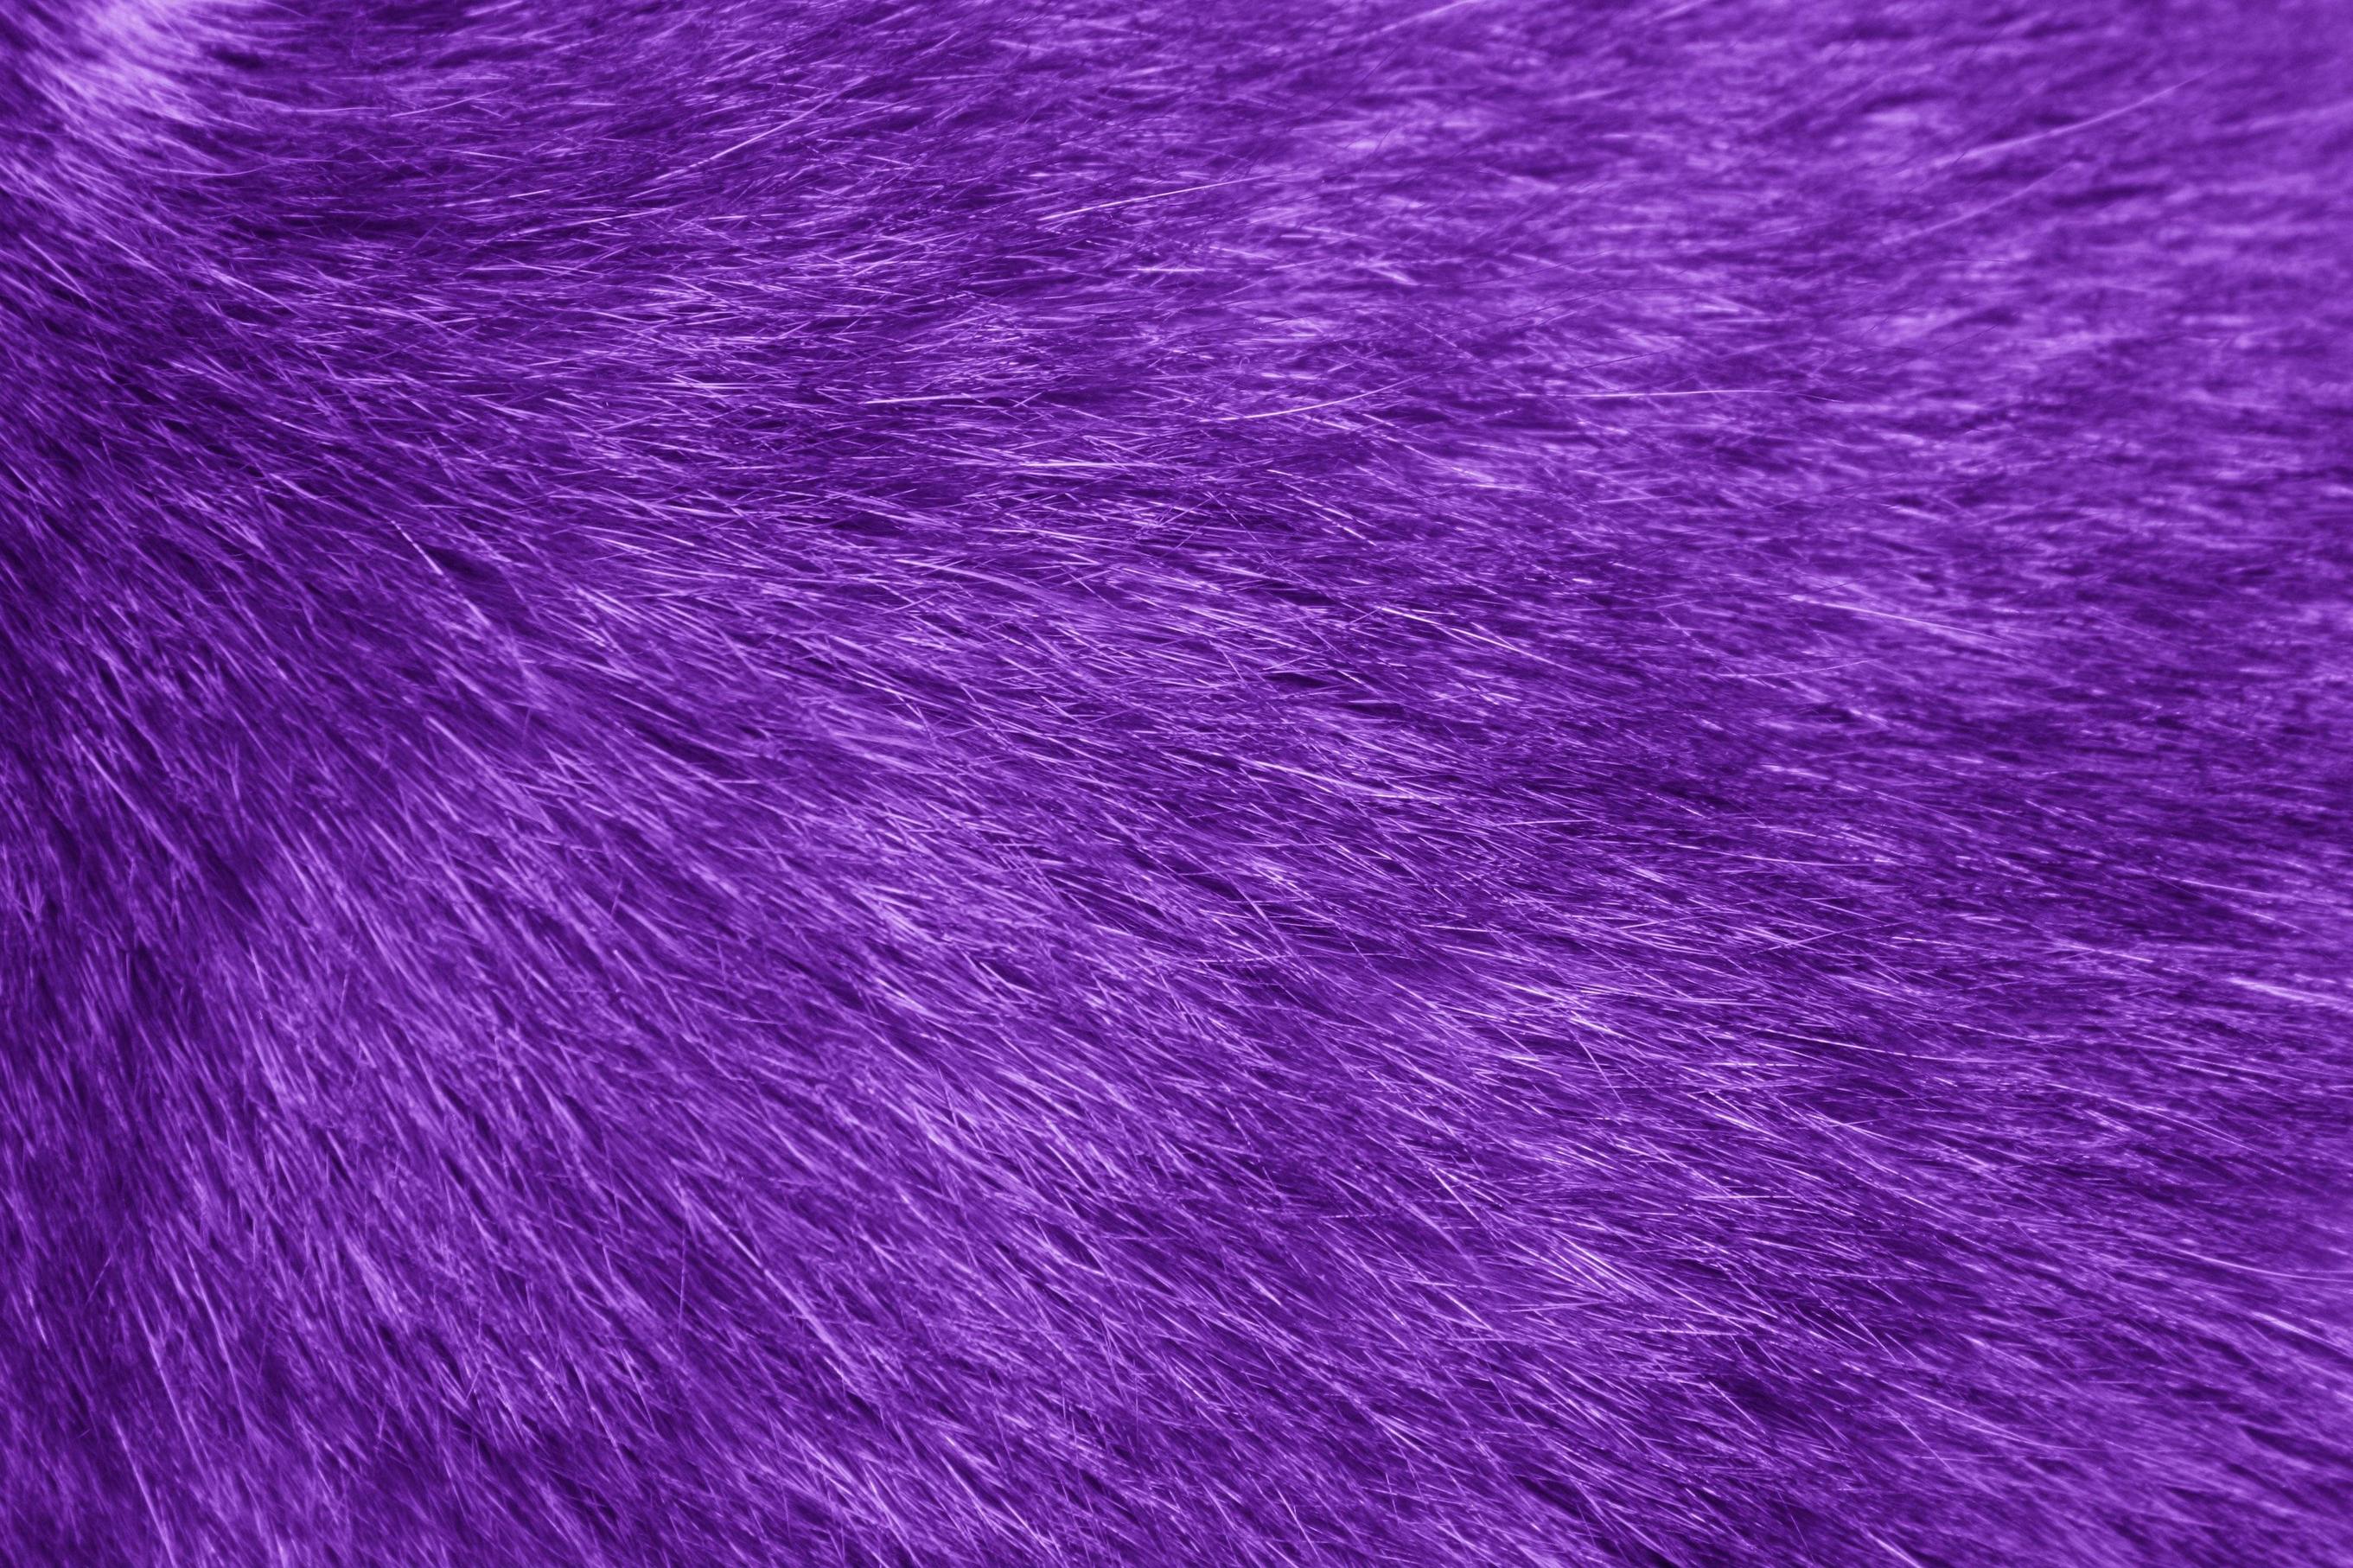 Fur Texture Purple Picture. Free Photograph. Photo Public Domain